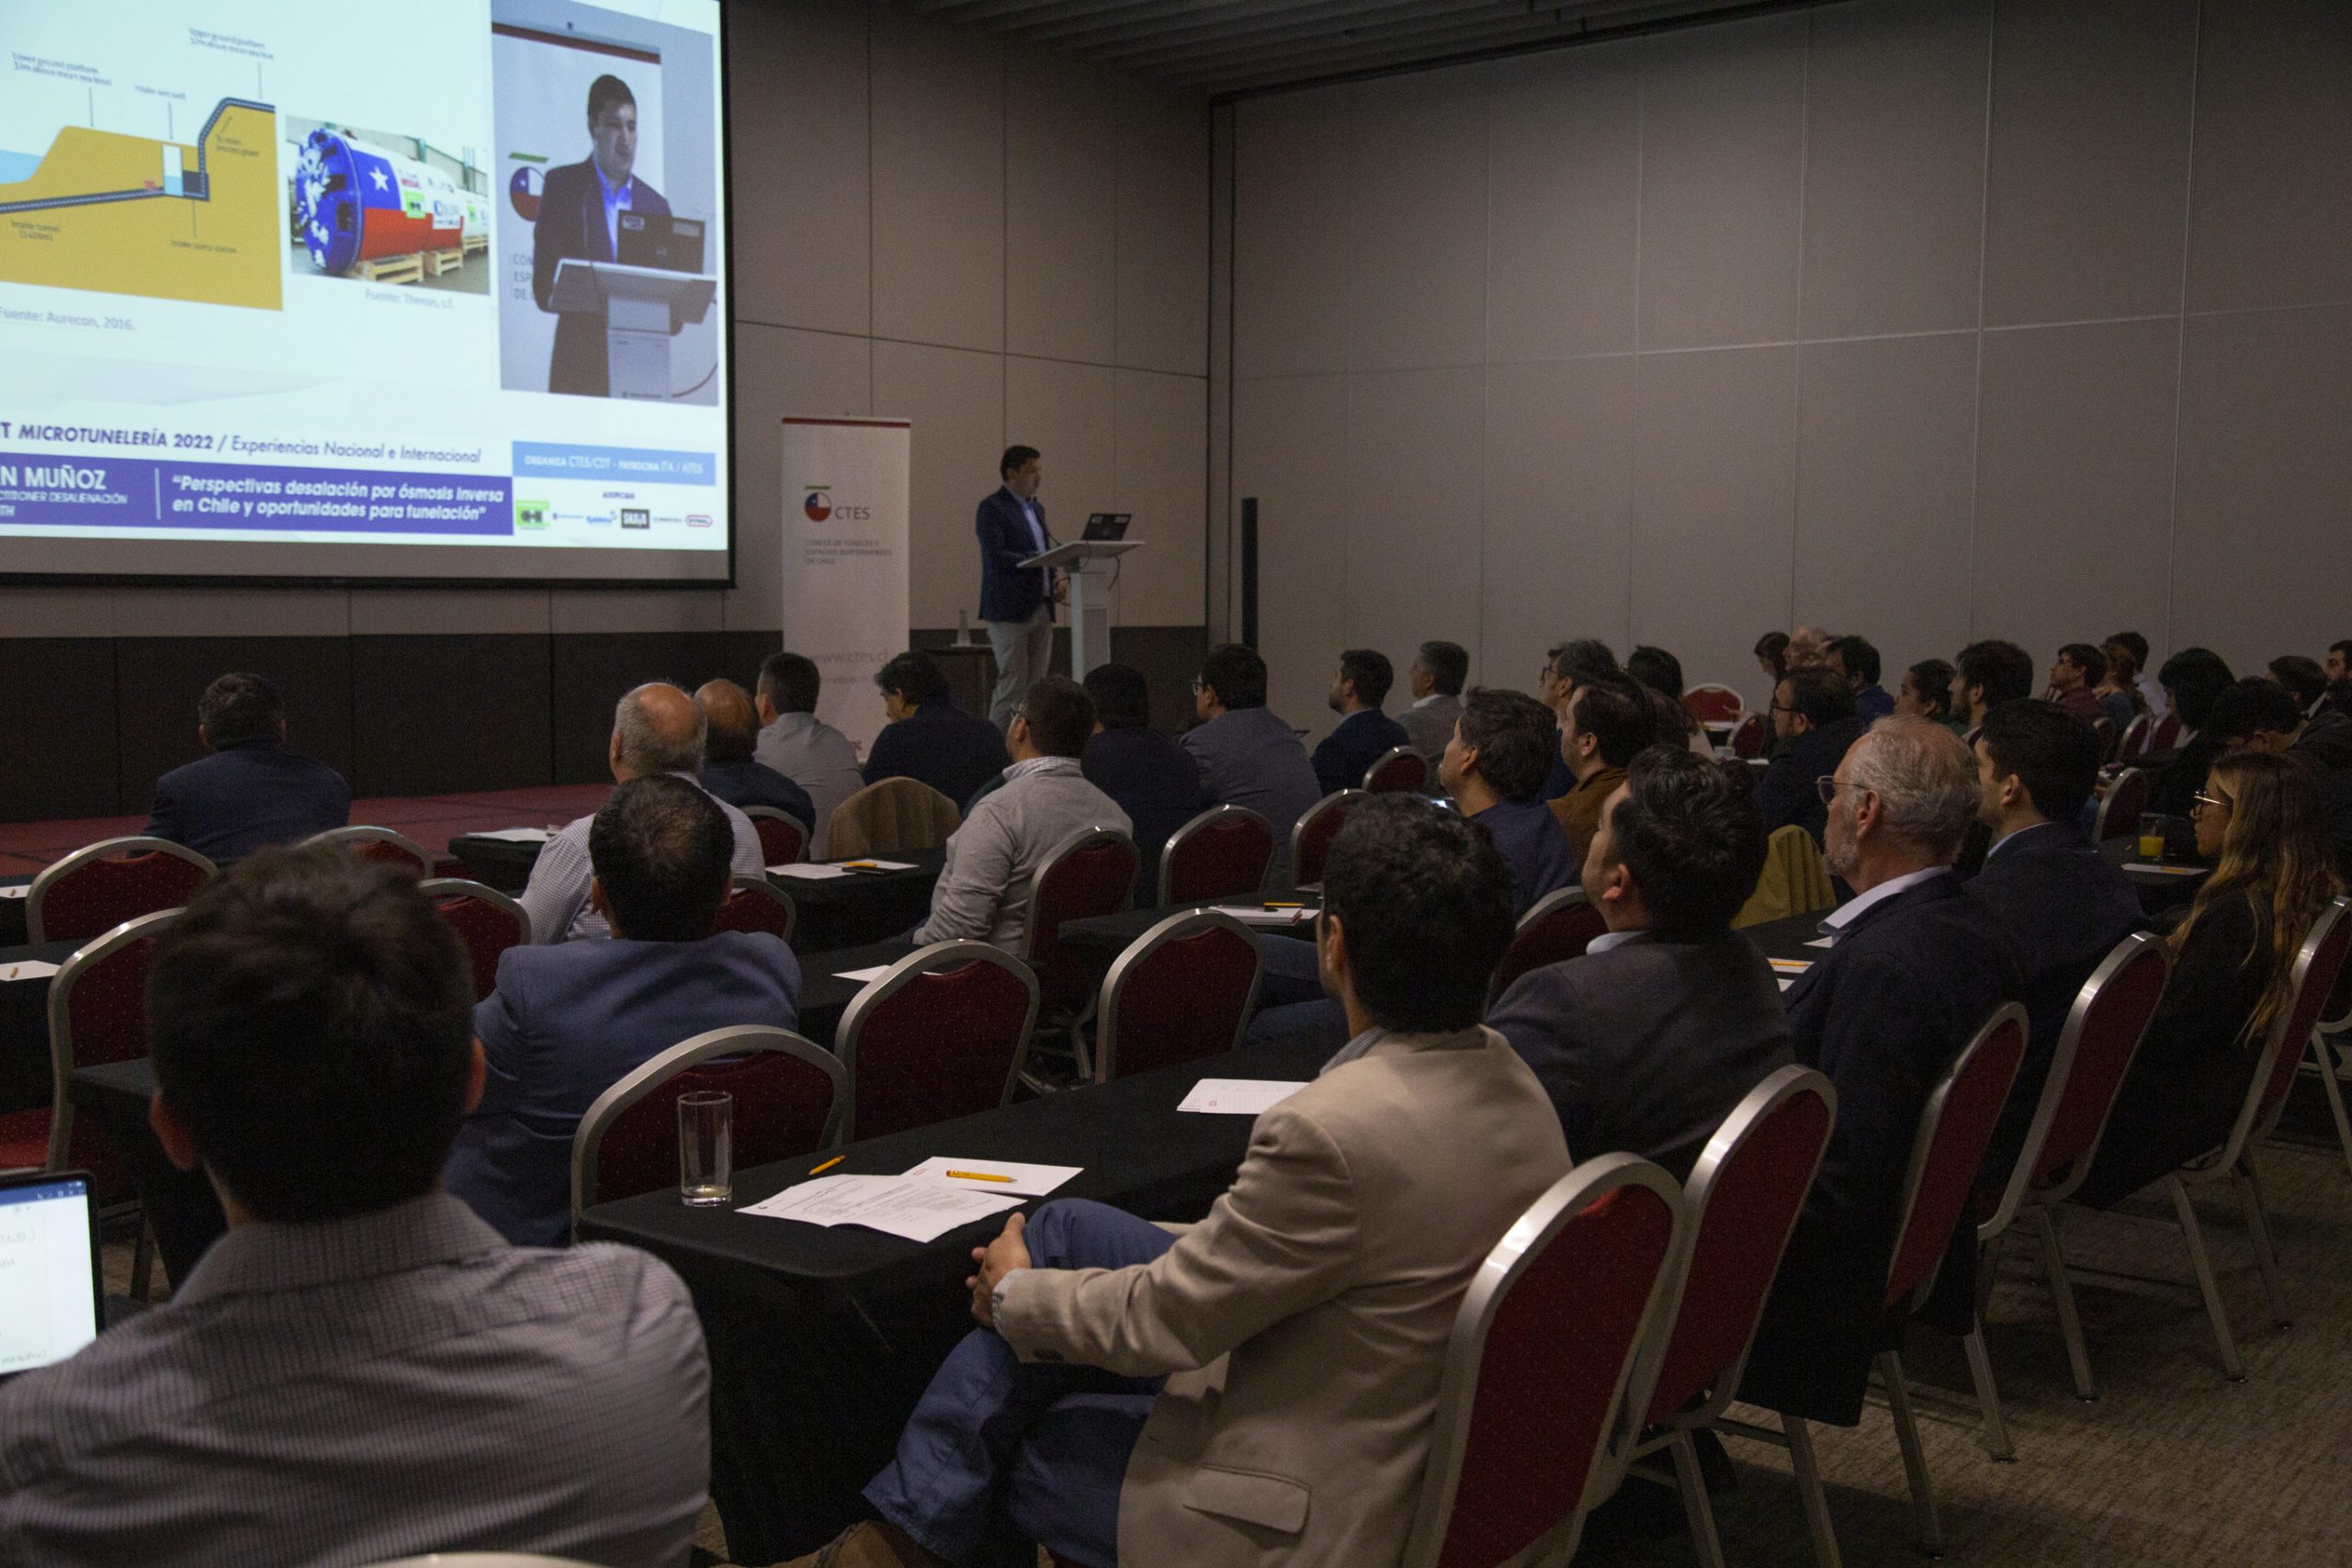 CTES Chile organiza exitoso SUMMIT sobre experiencias nacionales e internacionales de microtunelería